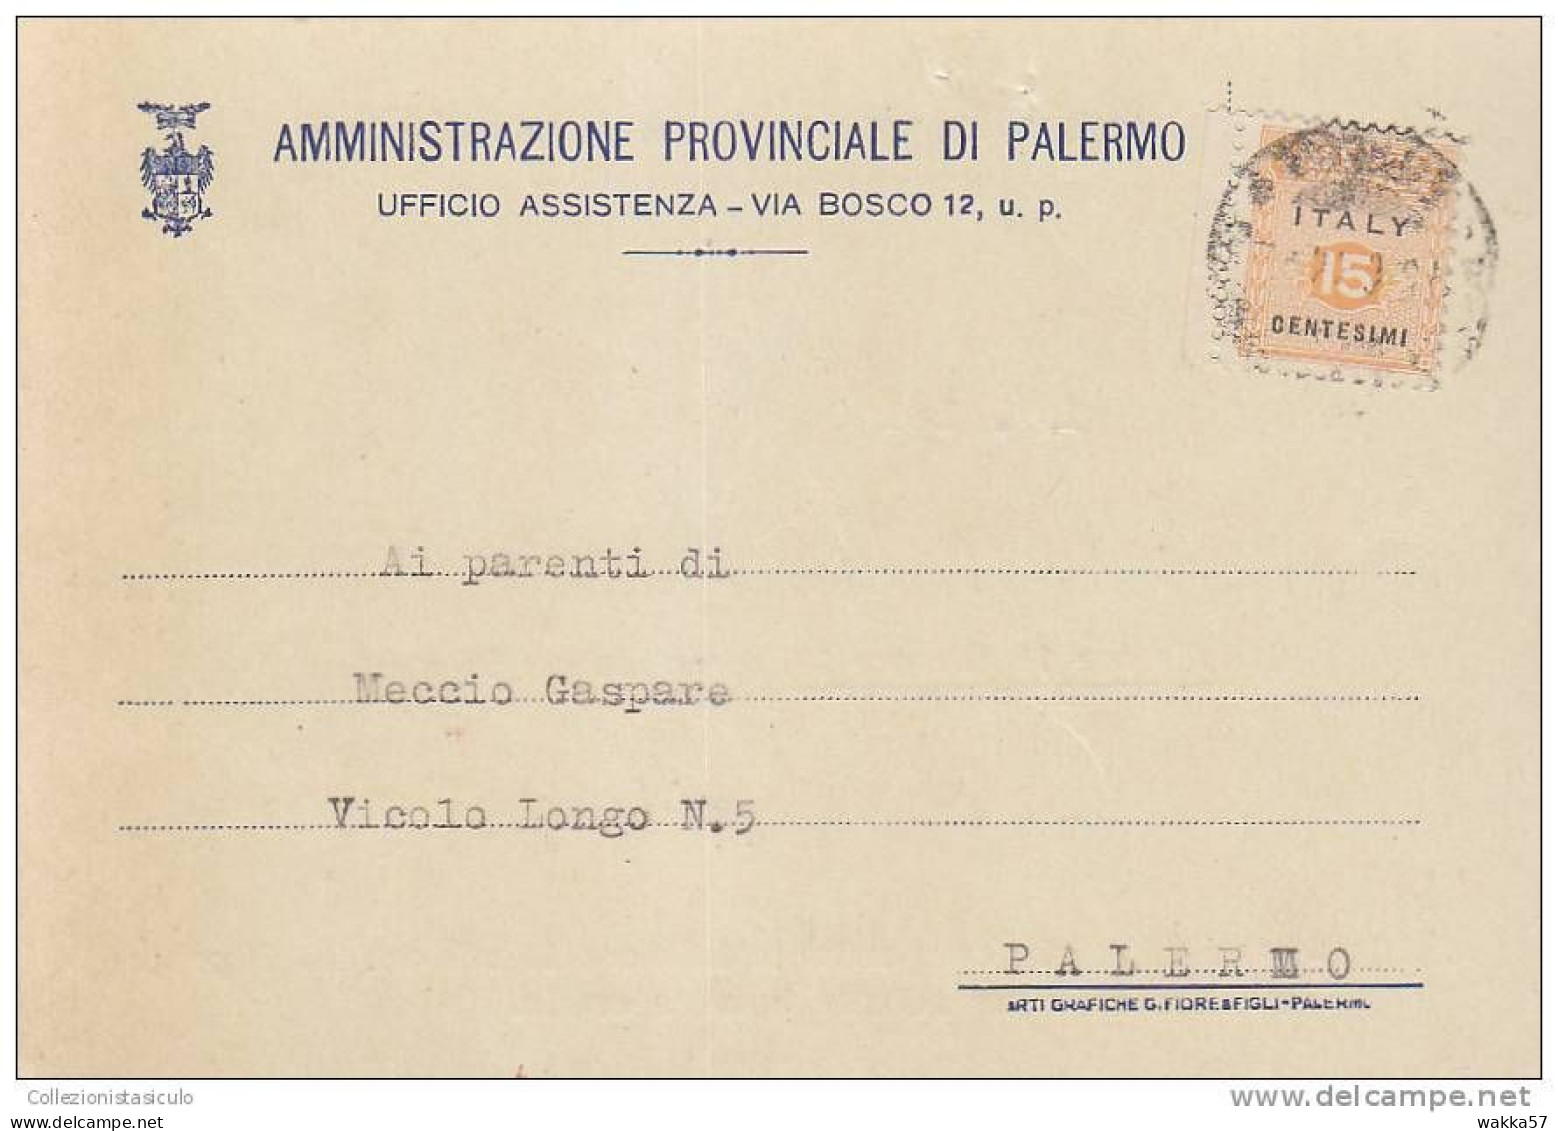 $-363- AMGOT Cent. 15 Cartolina Per Distretto Da Palermo X Città - Occ. Anglo-américaine: Sicile